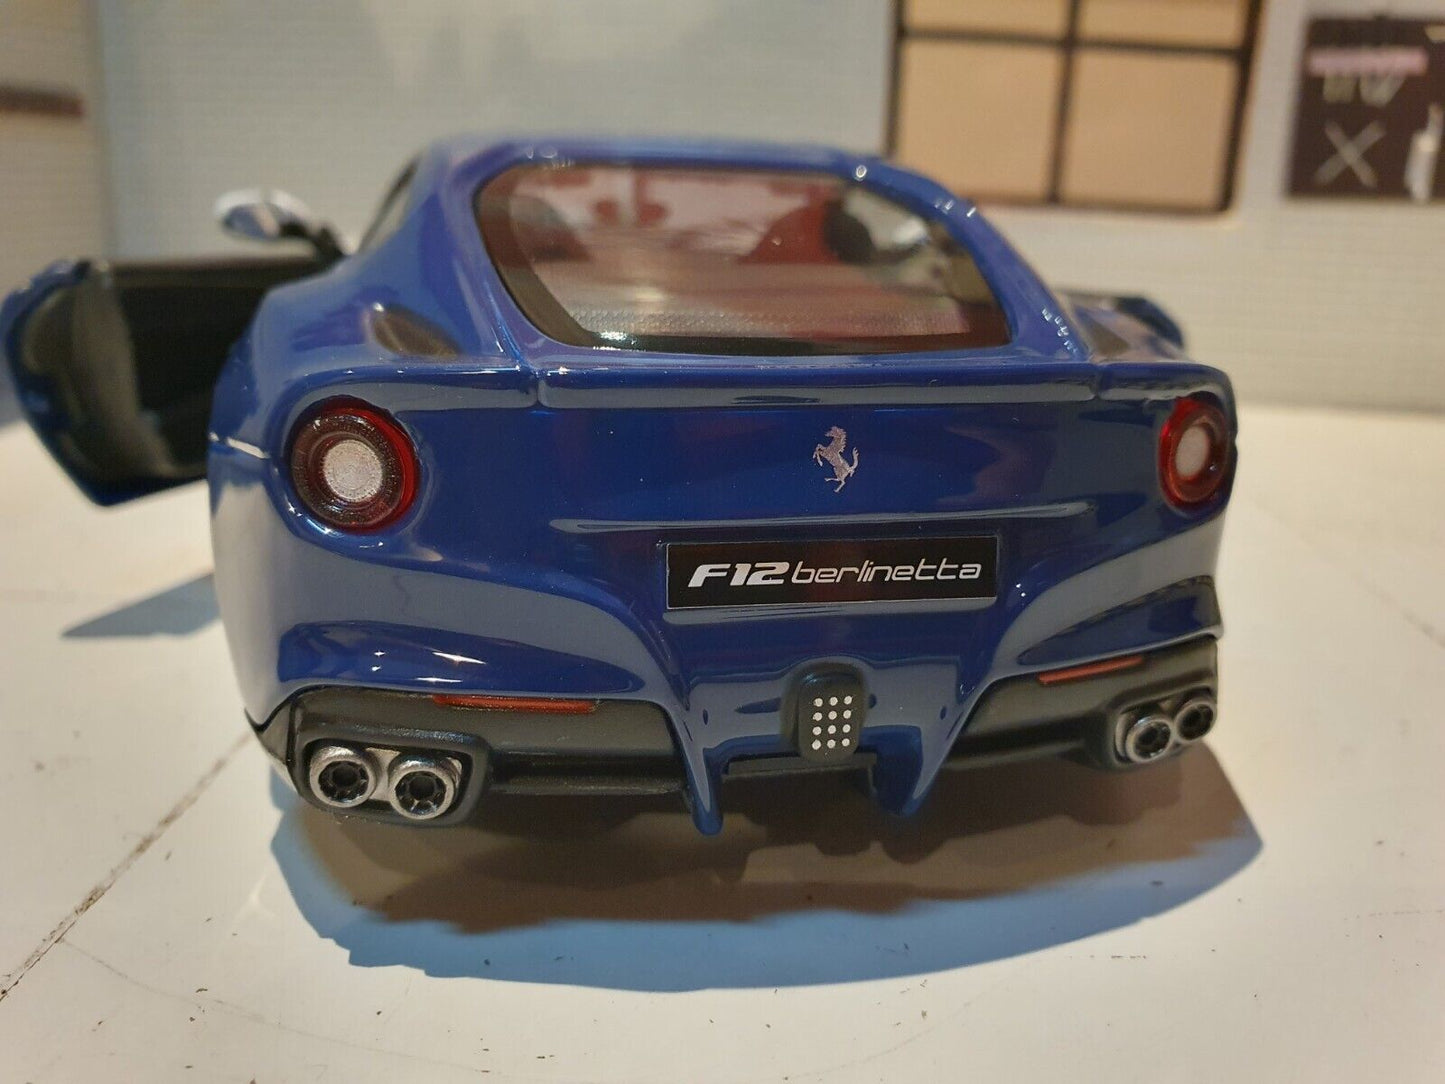 Ferrari 2015 F12 Berlinetta 308780385  Bburago 1:24